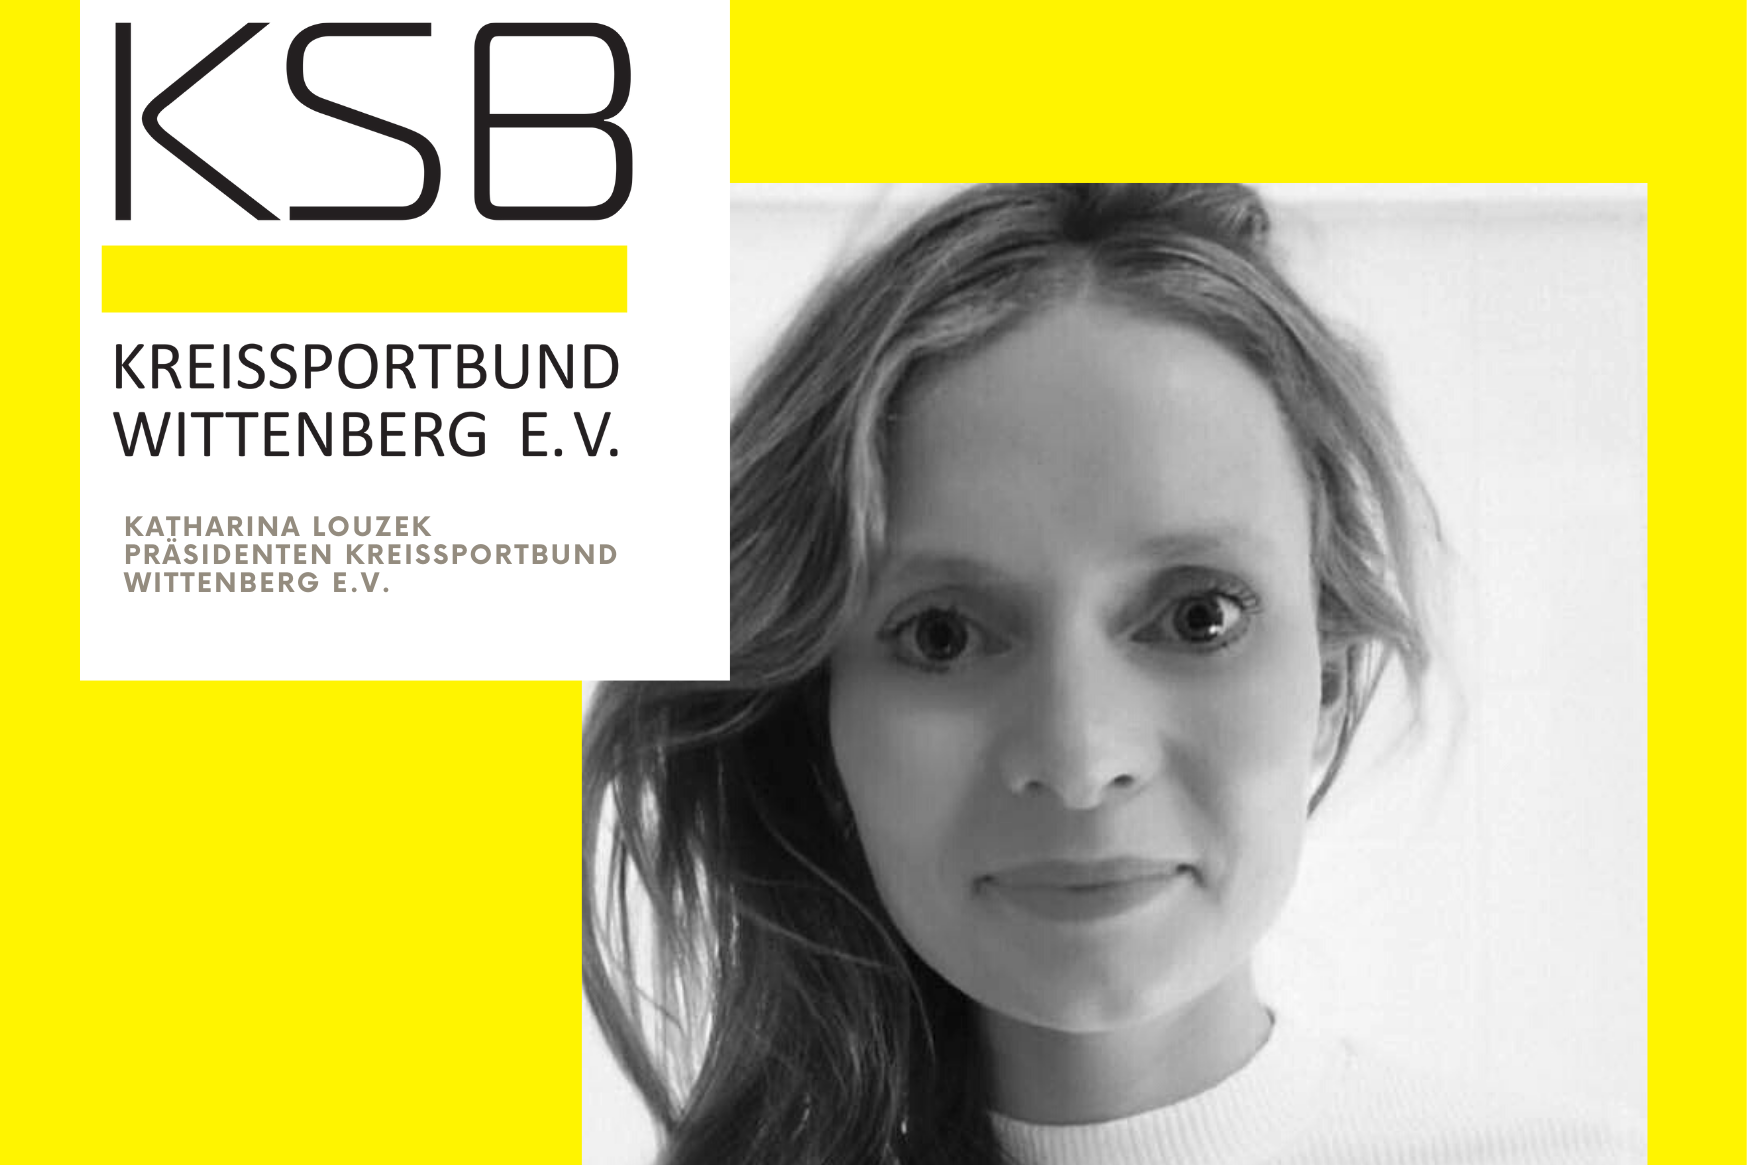 Katharina Louzek, Präsidentin des KSB Wittenberg, ist eines der neuen Gesichter an der Spitze der Mitgliedsorganisationen.